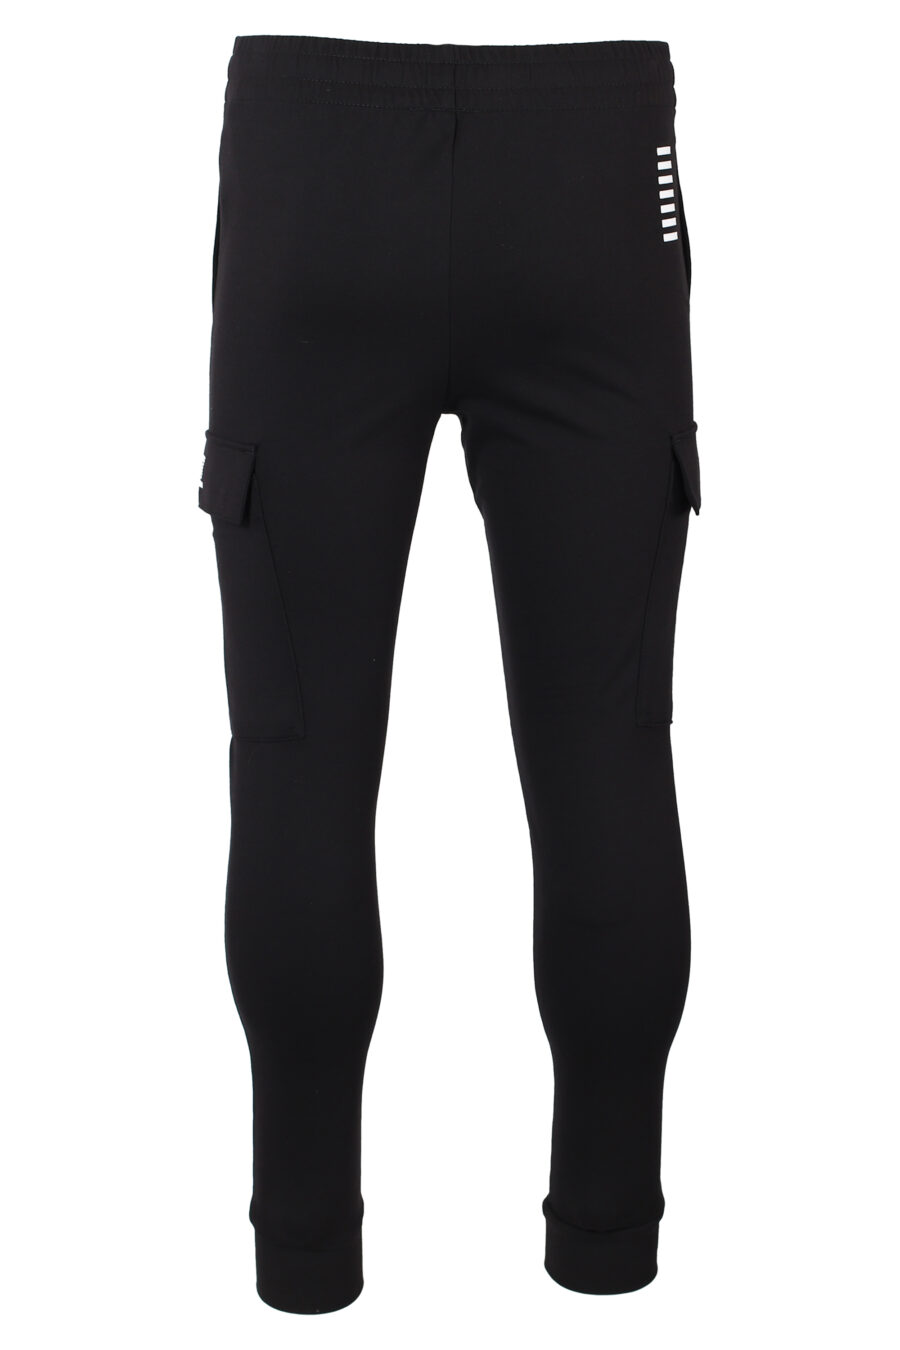 Pantalón de chándal negro estilo cargo y minilogo - IMG 9918